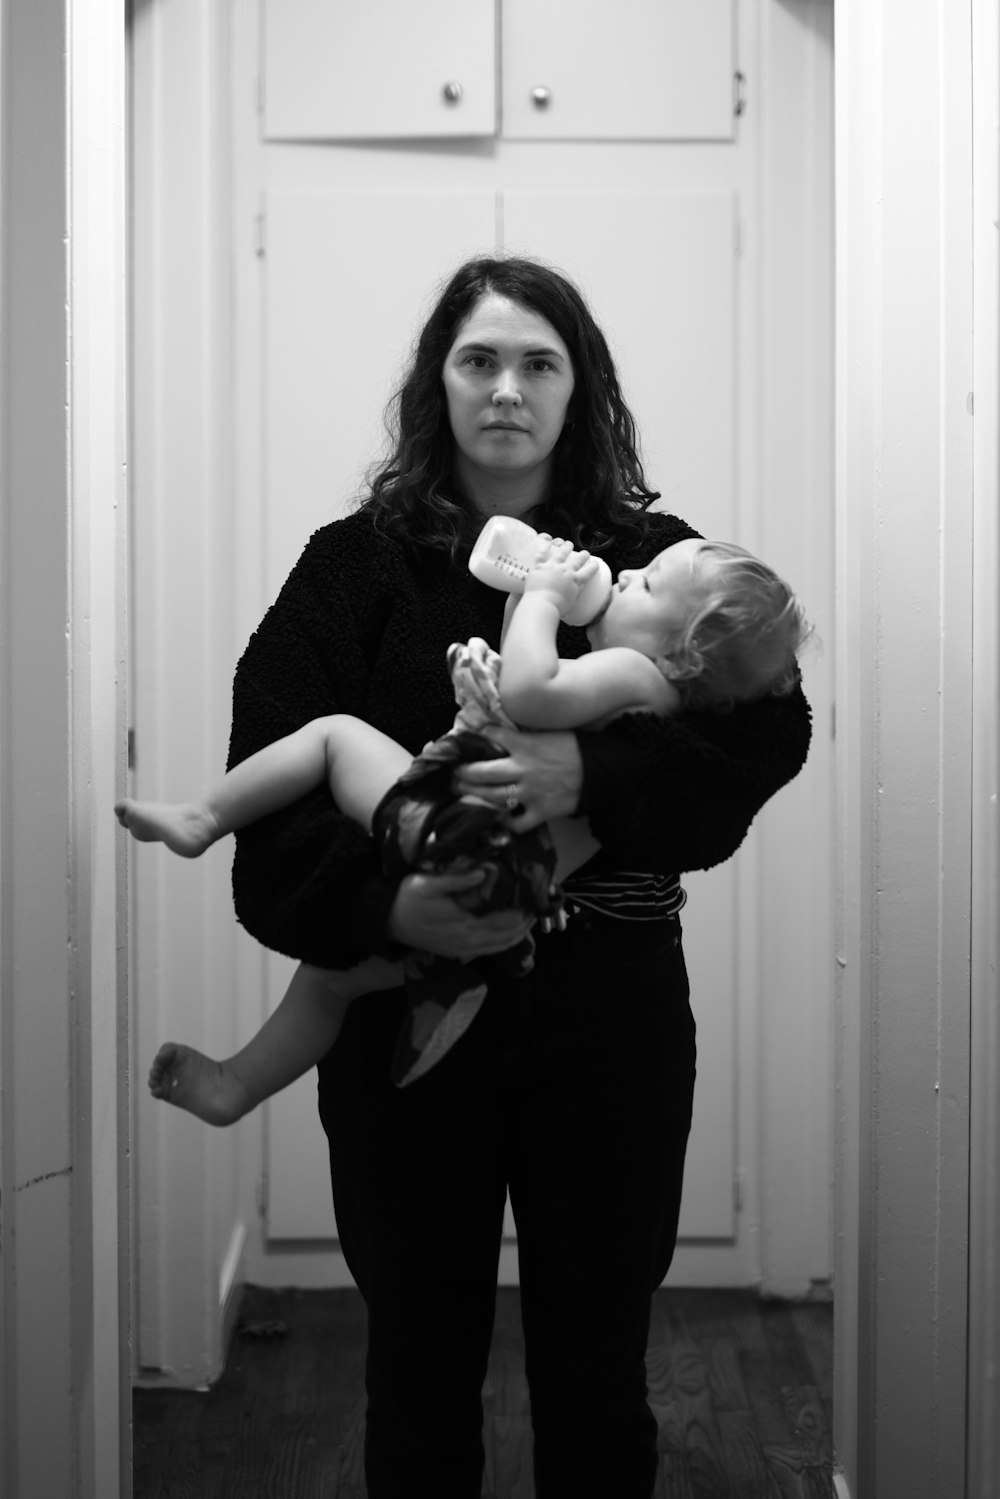 검은 긴 소매 셔츠를 입은 여자가 회색조 사진에서 아기를 안고 있다